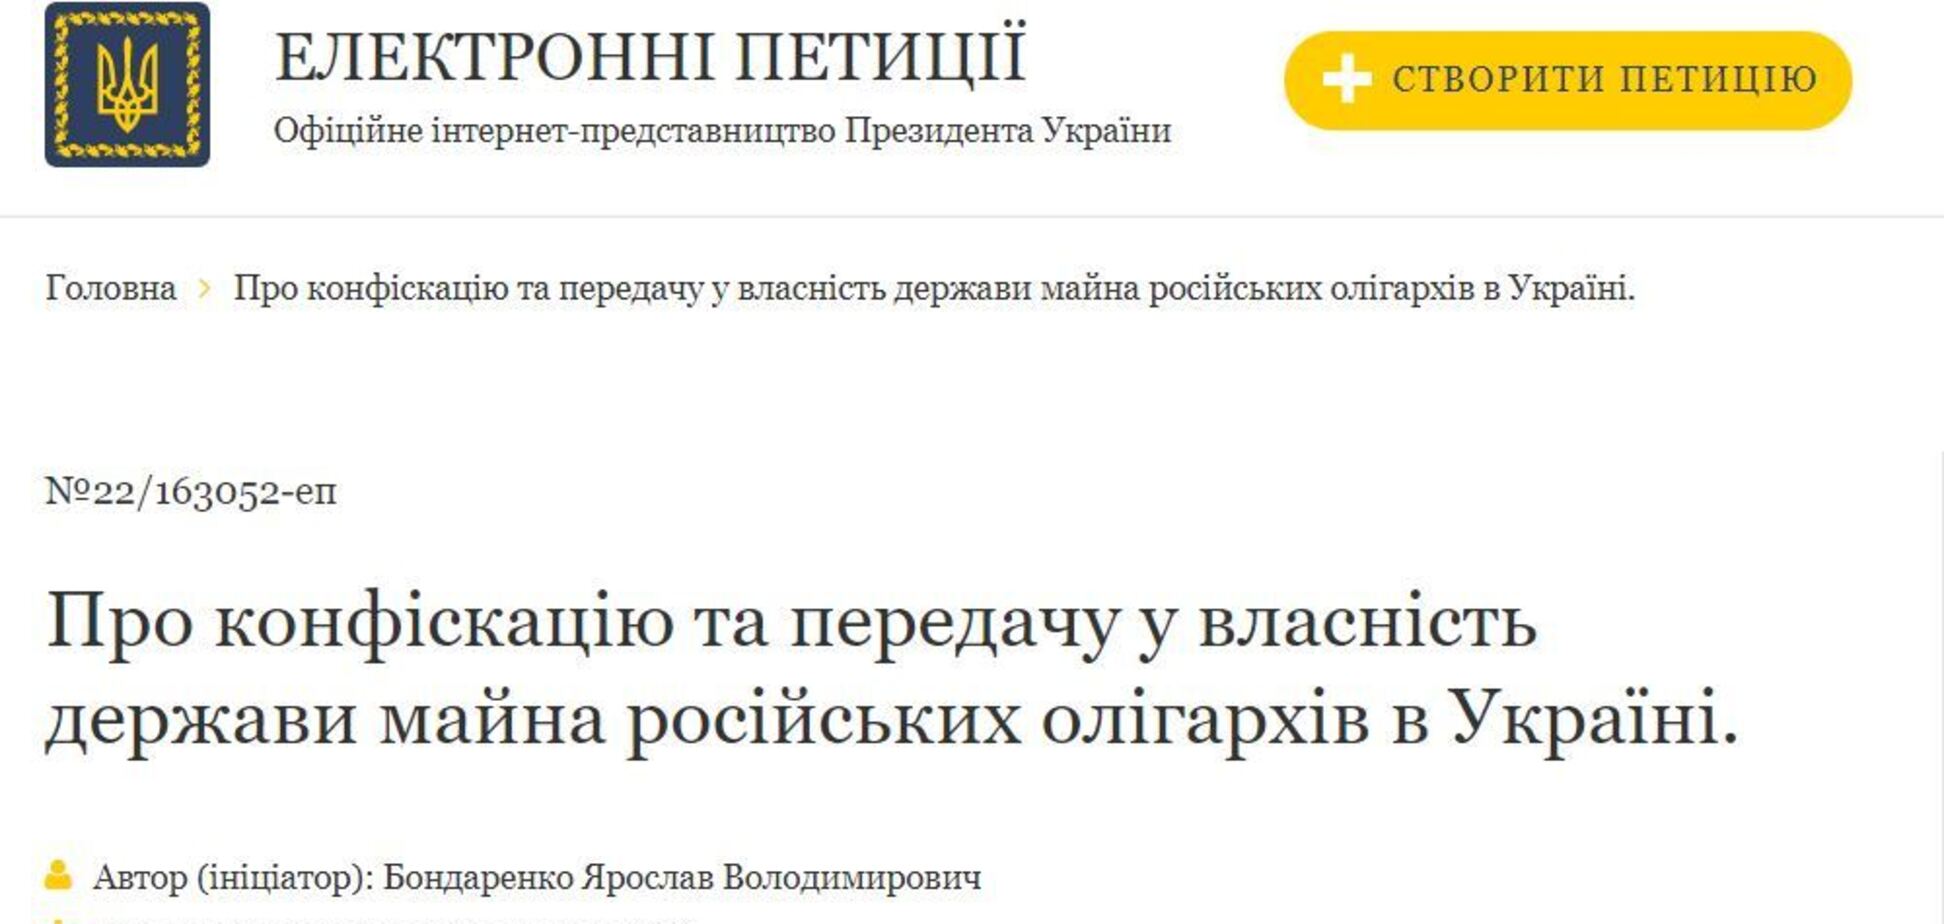 Создана петиция к президенту относительно механизма конфискации активов олигархов РФ в Украине